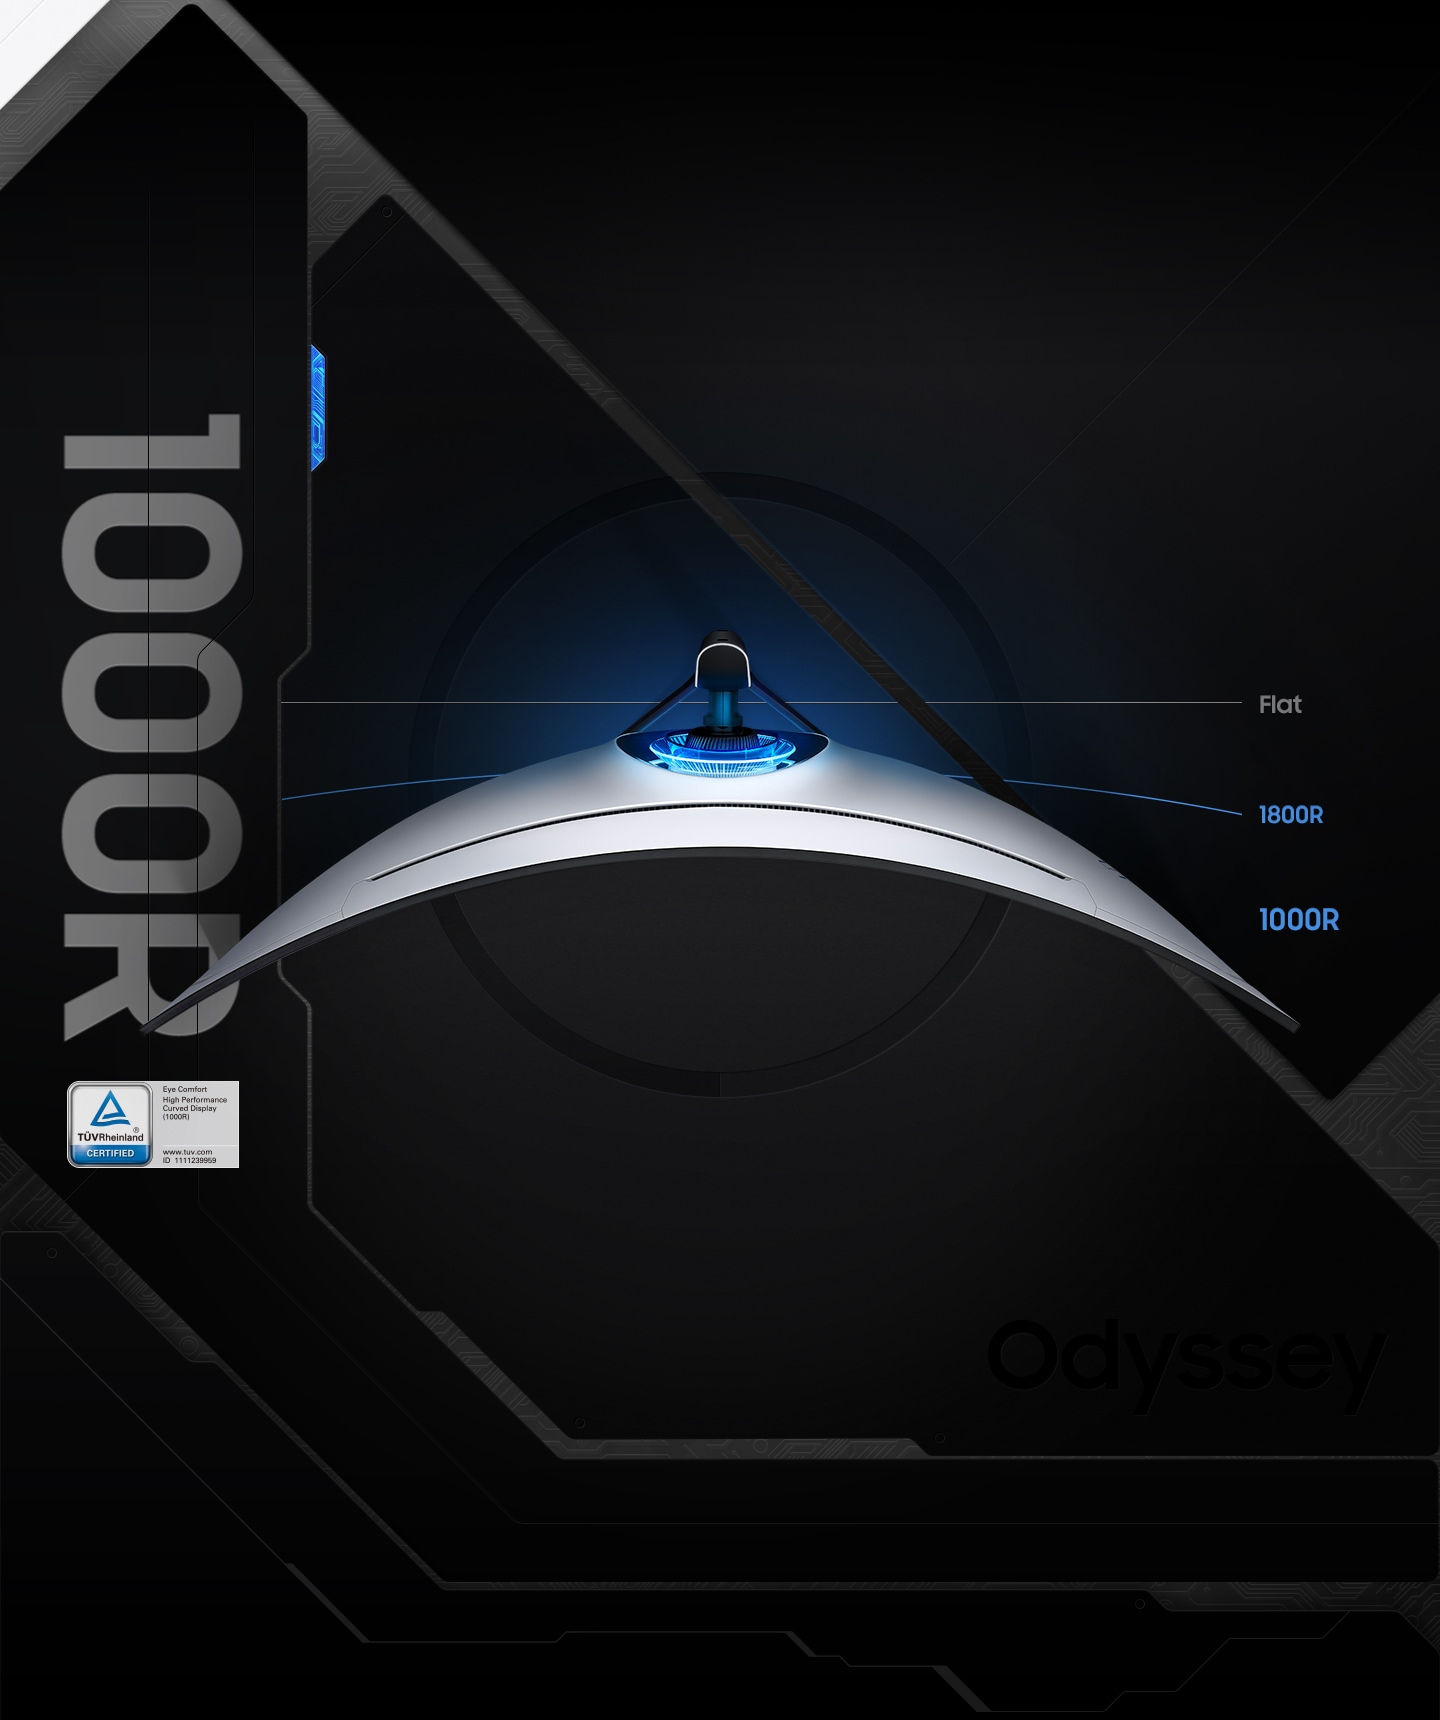 Mặt trên của màn hình cong được hiển thị với đèn cốt ở mặt sau sáng màu xanh lam. Logo của TUV nằm ở góc dưới bên trái. Các đường bên cạnh màn hình cũng thể hiện độ cong của màn hình phẳng và 1800R để so sánh với 1000R.